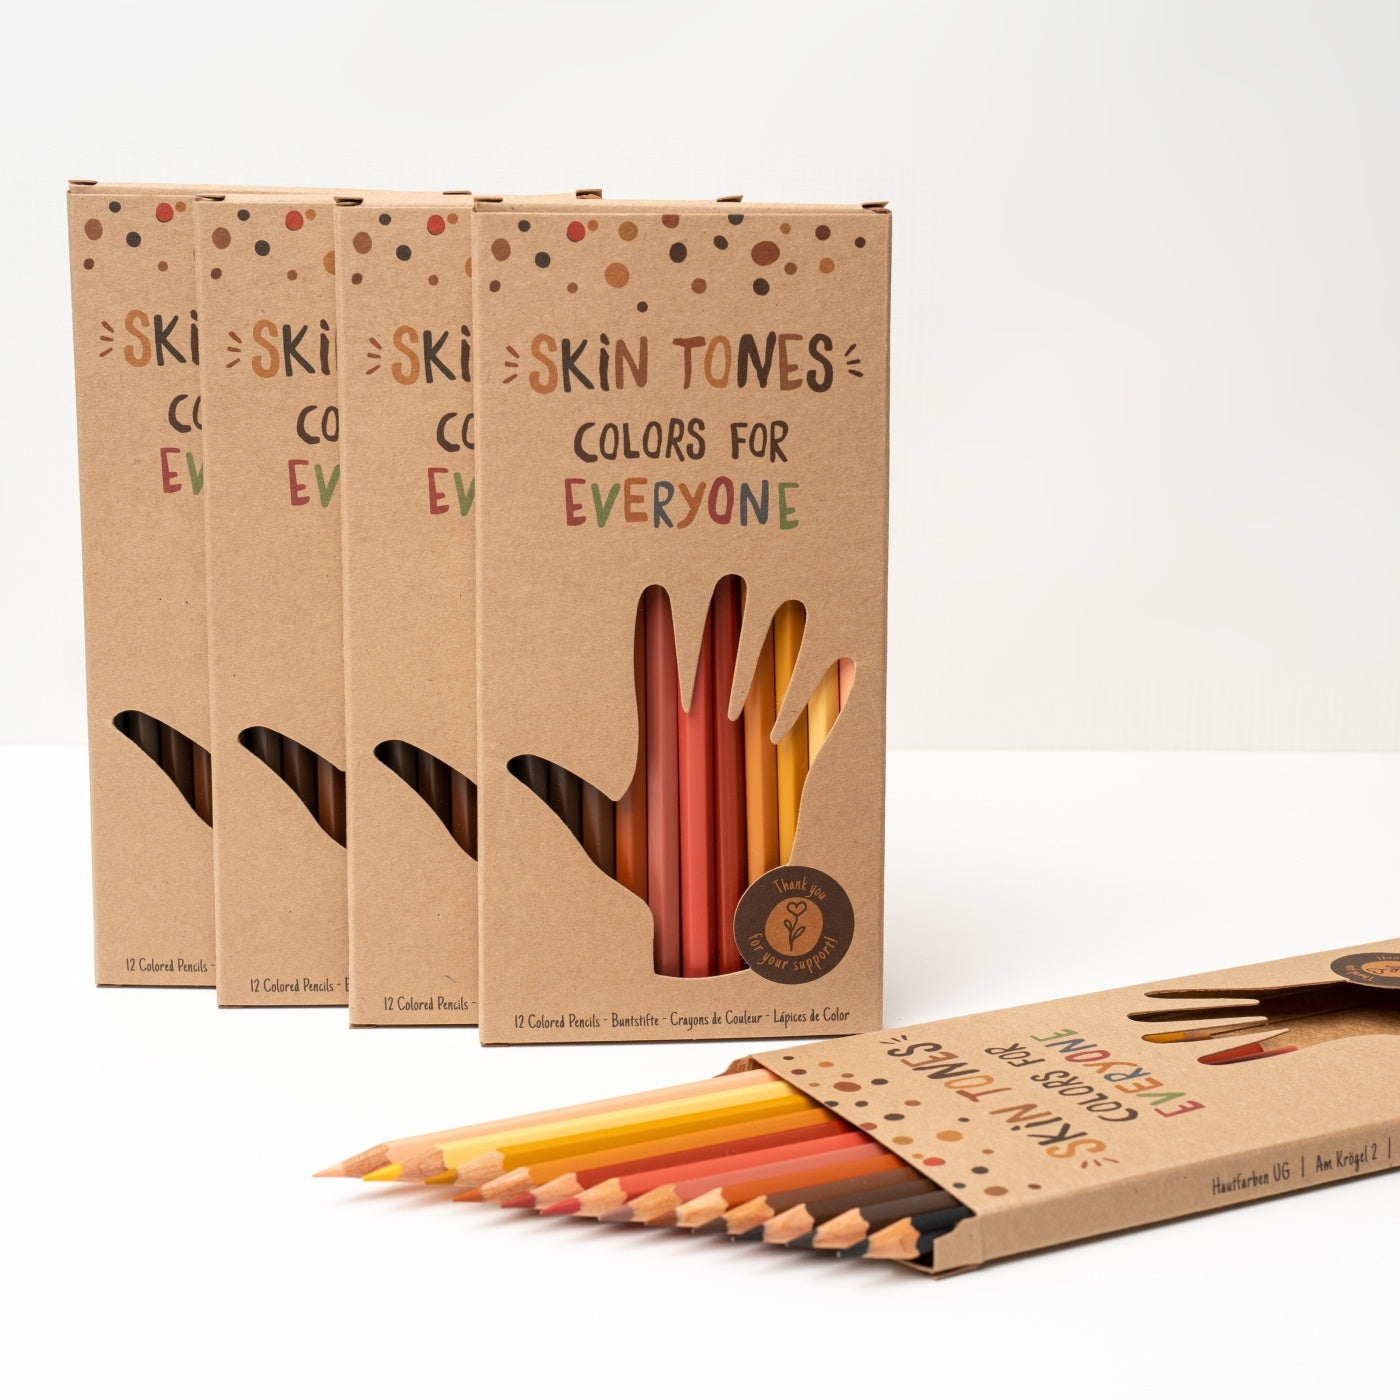 Hautfarben Buntstifte englische Edition Skin Tones Colors for everyone Pencils Sets 5 Stück zur Einschulung mit umweltfreundlicher Verpackung